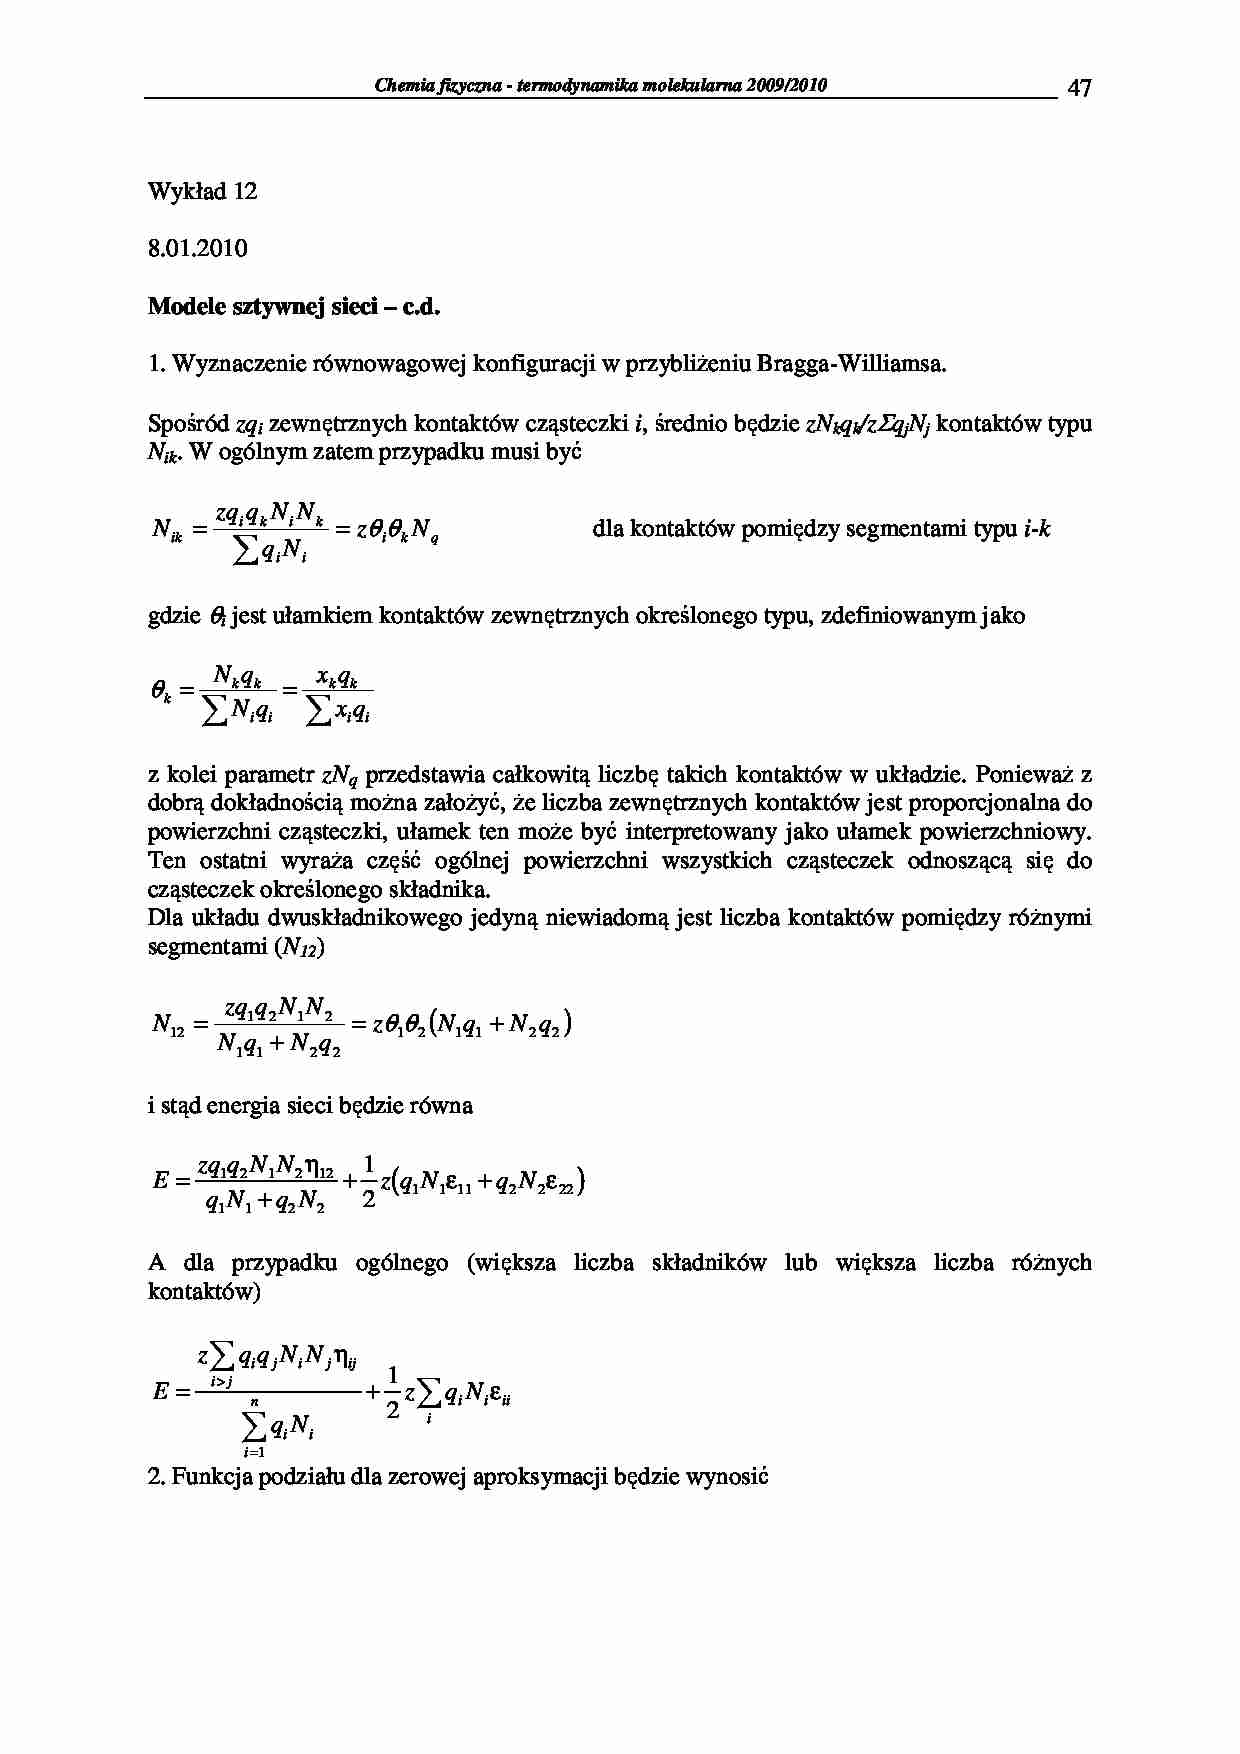 Chemia fizyczna - termodynamika molekularna 2009/2010-wykłady5 - strona 1